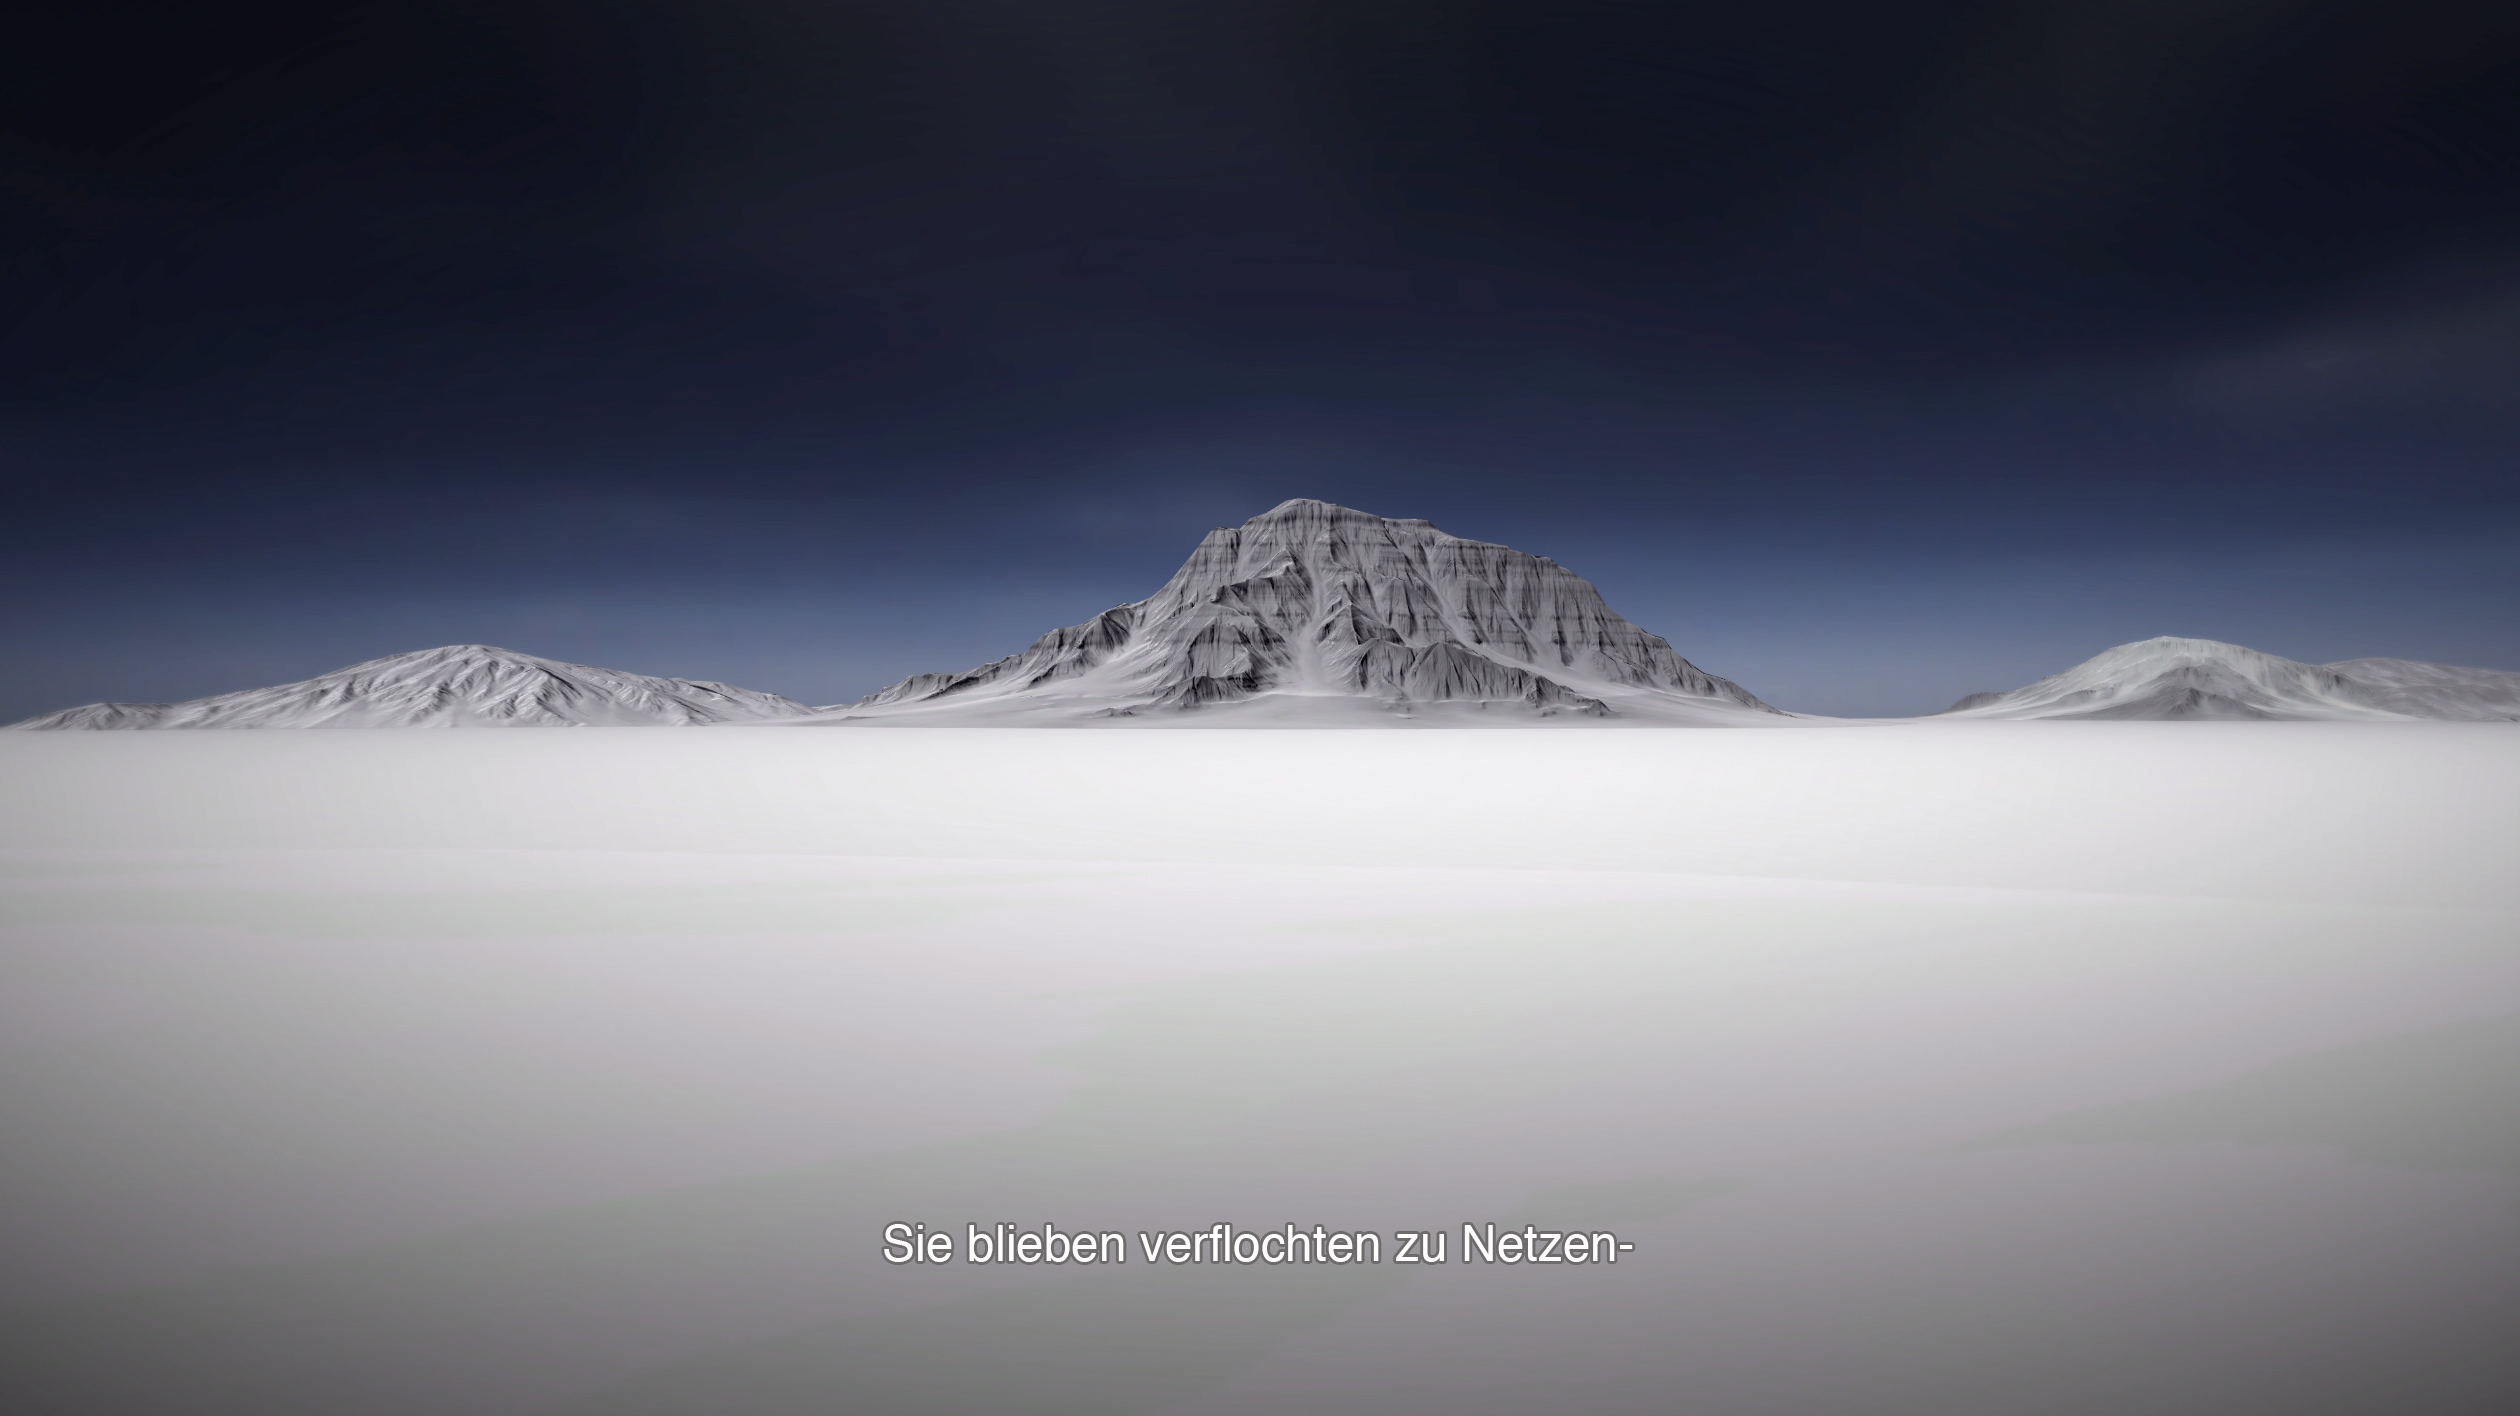 cold mountain-y landscape; subtitles: Sie blieben verflochten zu Netzen-